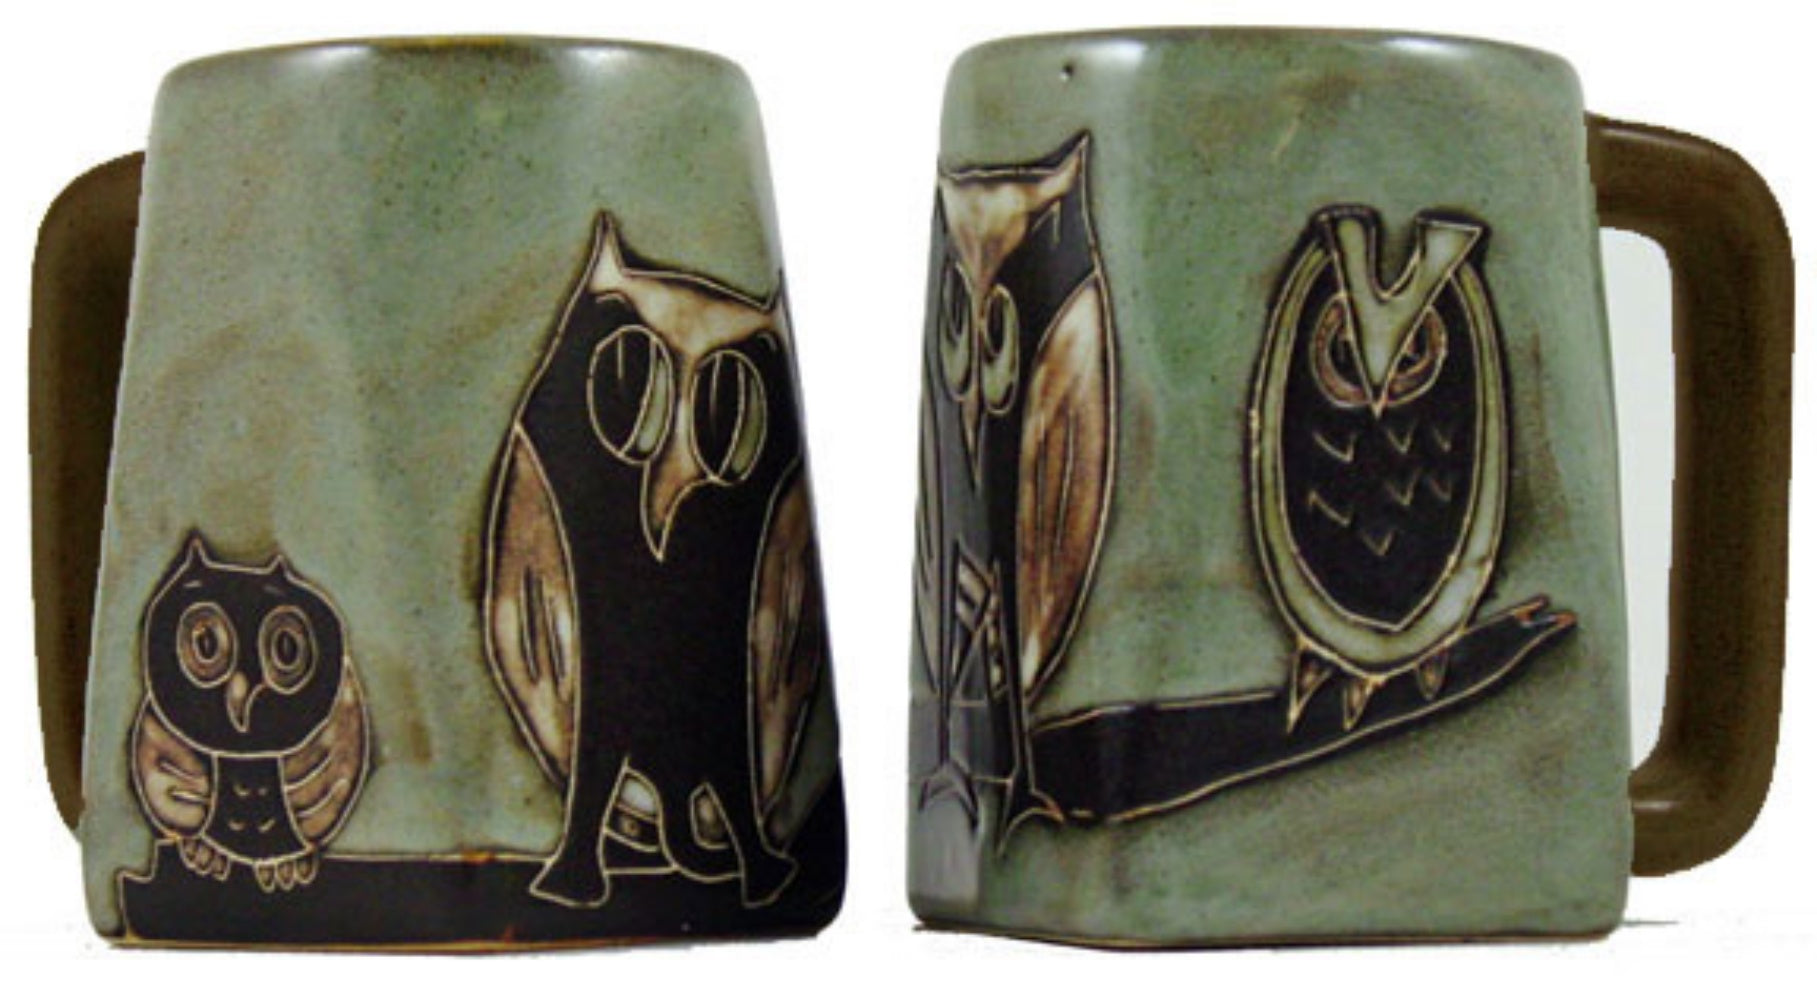 Mara Square Bottom Mug 12 oz - Owls   511S8